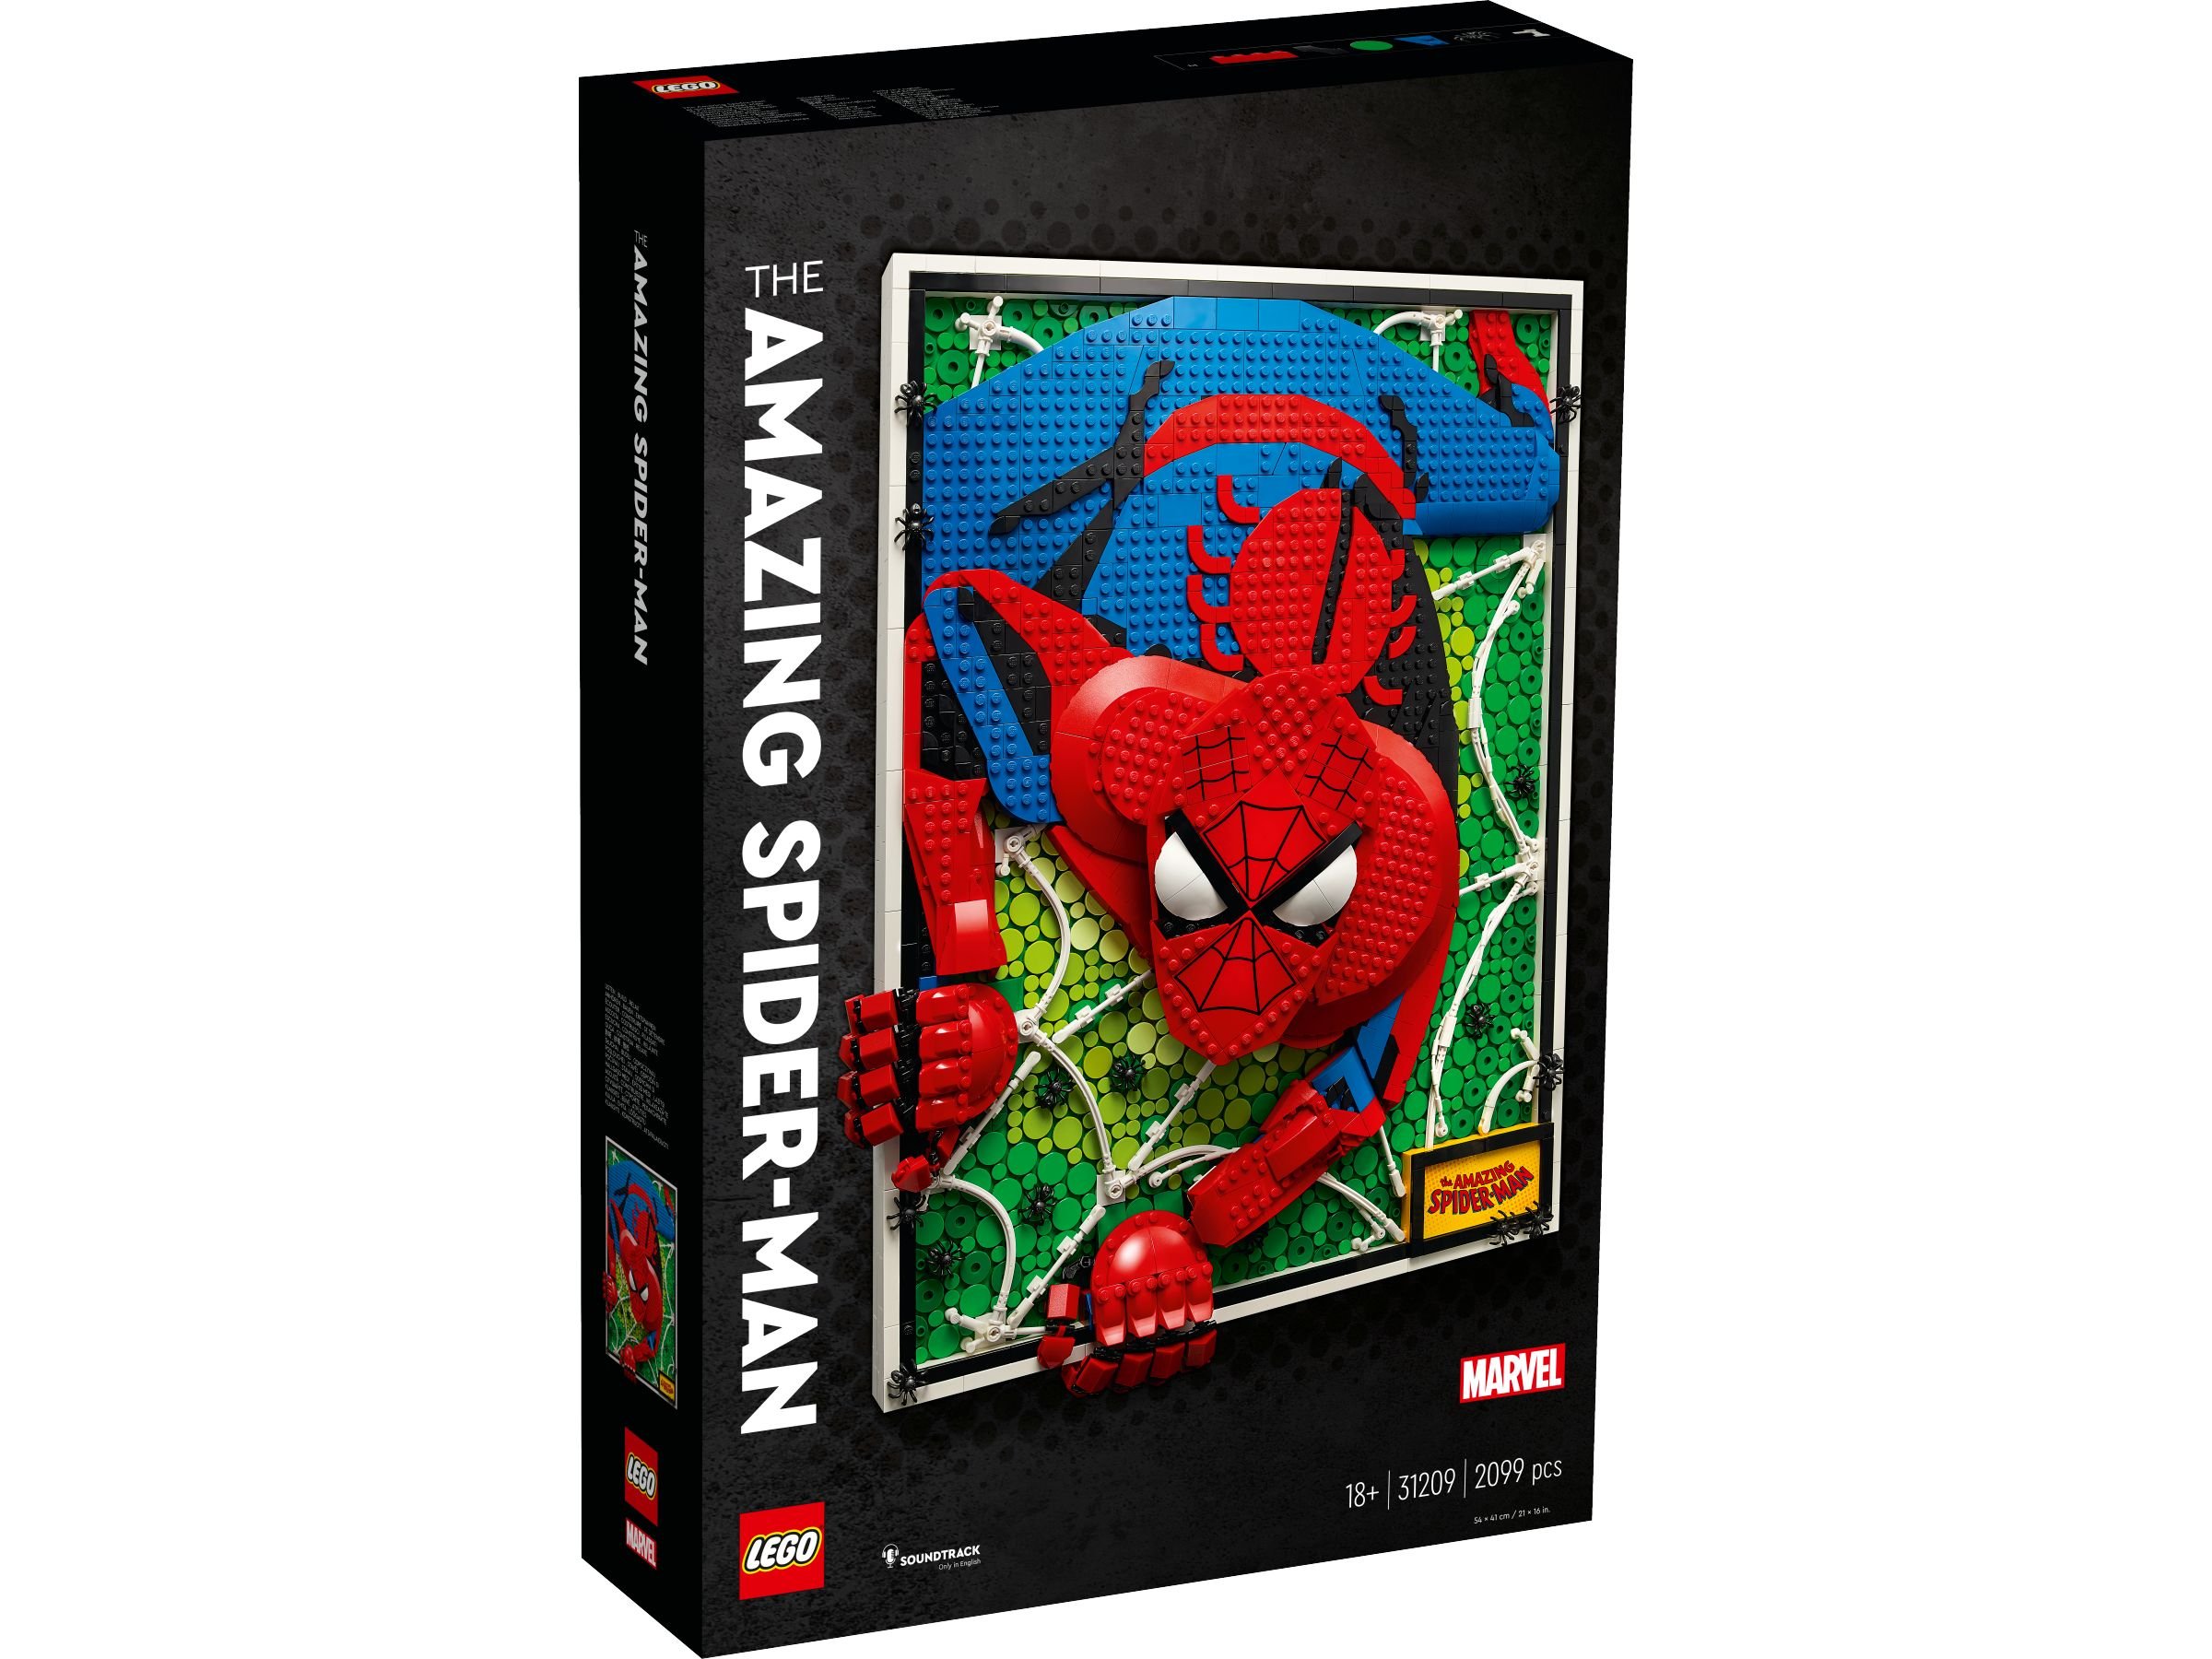 LEGO ART 31209 The Amazing Spider-Man LEGO_31209_Box1_v29.jpg